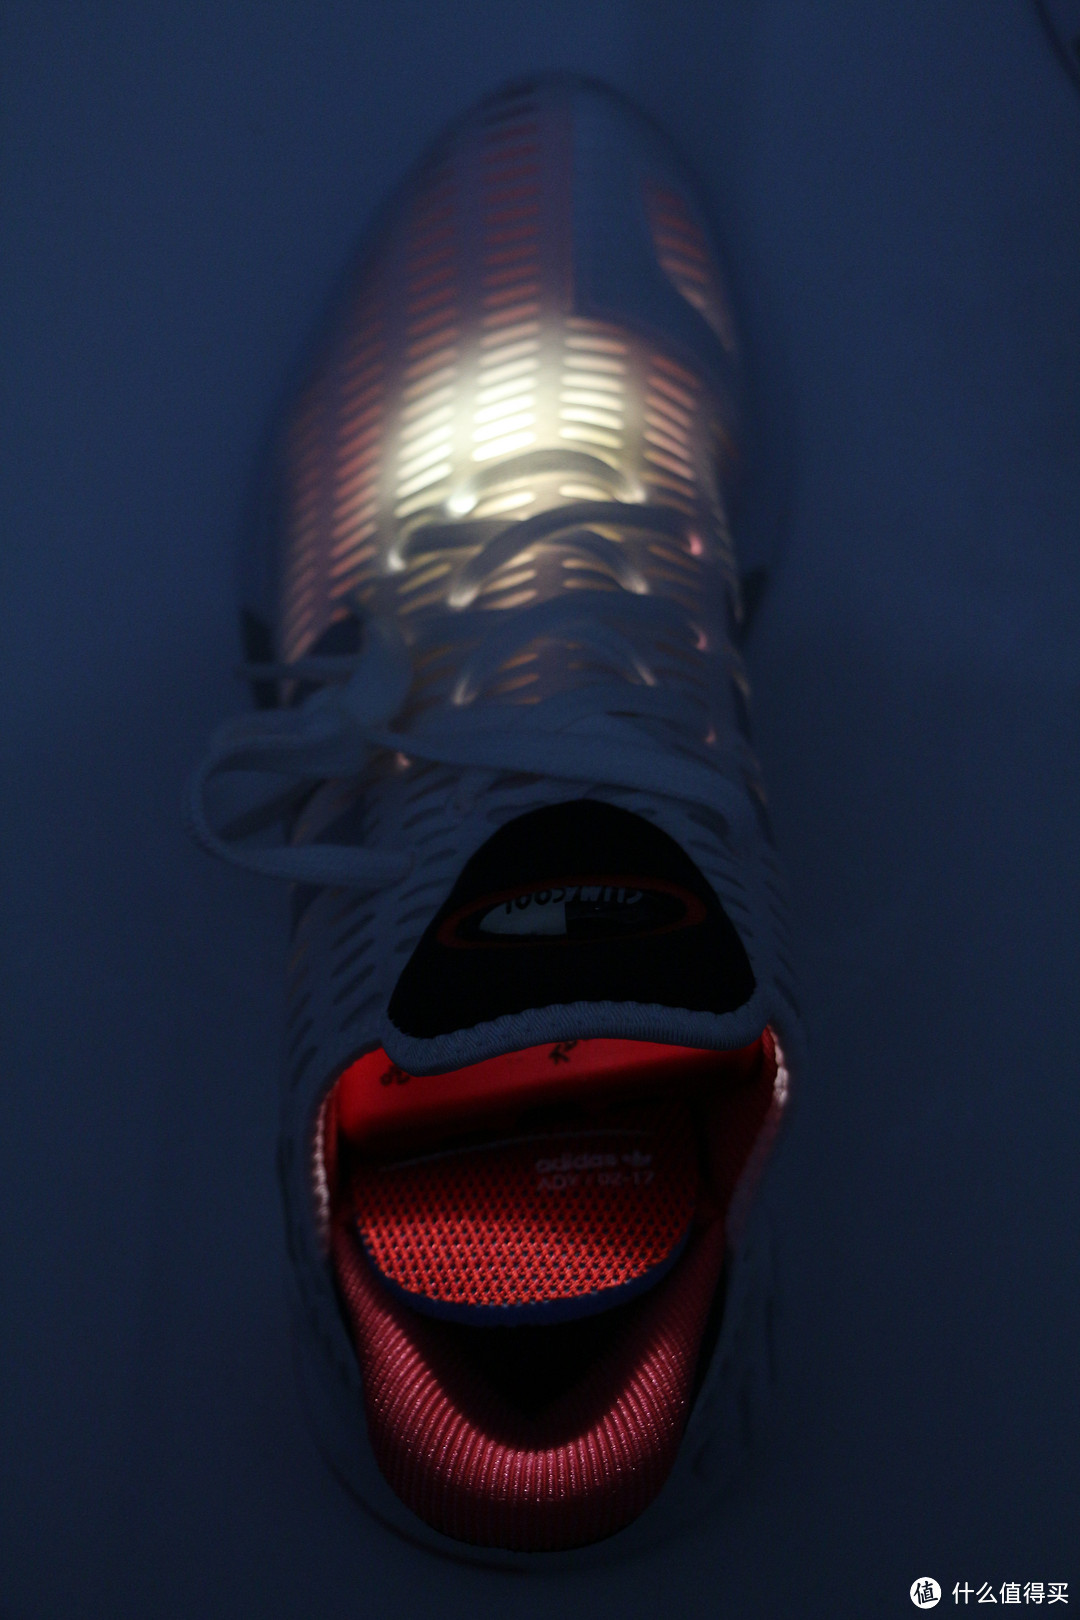 #晒单大赛#Adidas 阿迪达斯 CLIMACOOL 02/17 运动鞋 开箱晒单